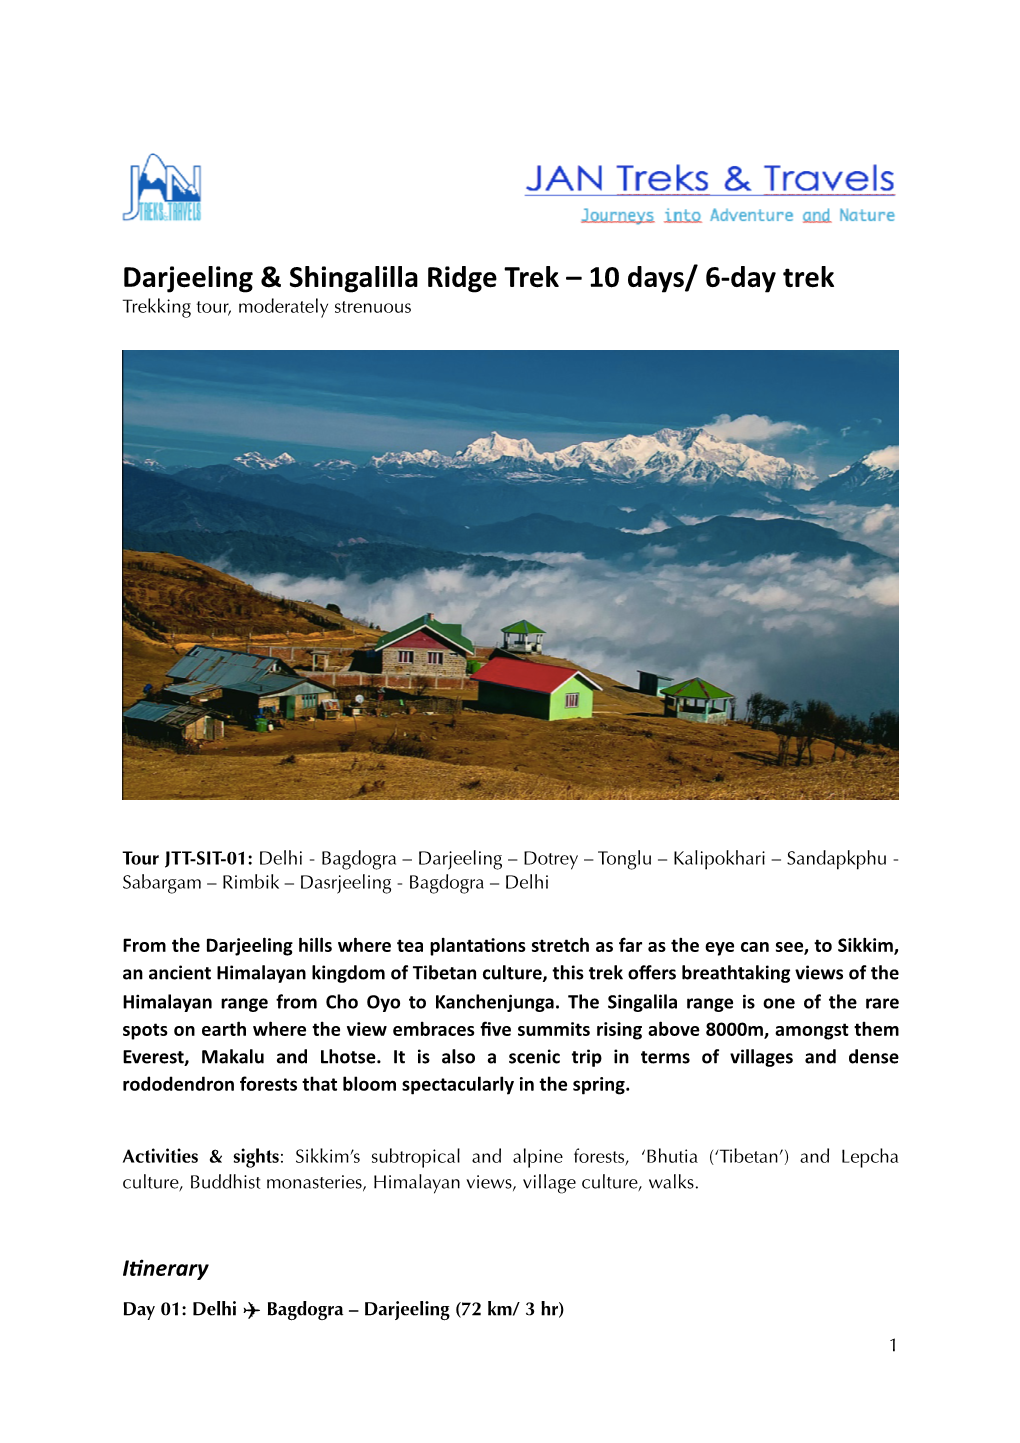 Darjeeling & Shingalilla Ridge Trek – 10 Days/ 6-Day Trek